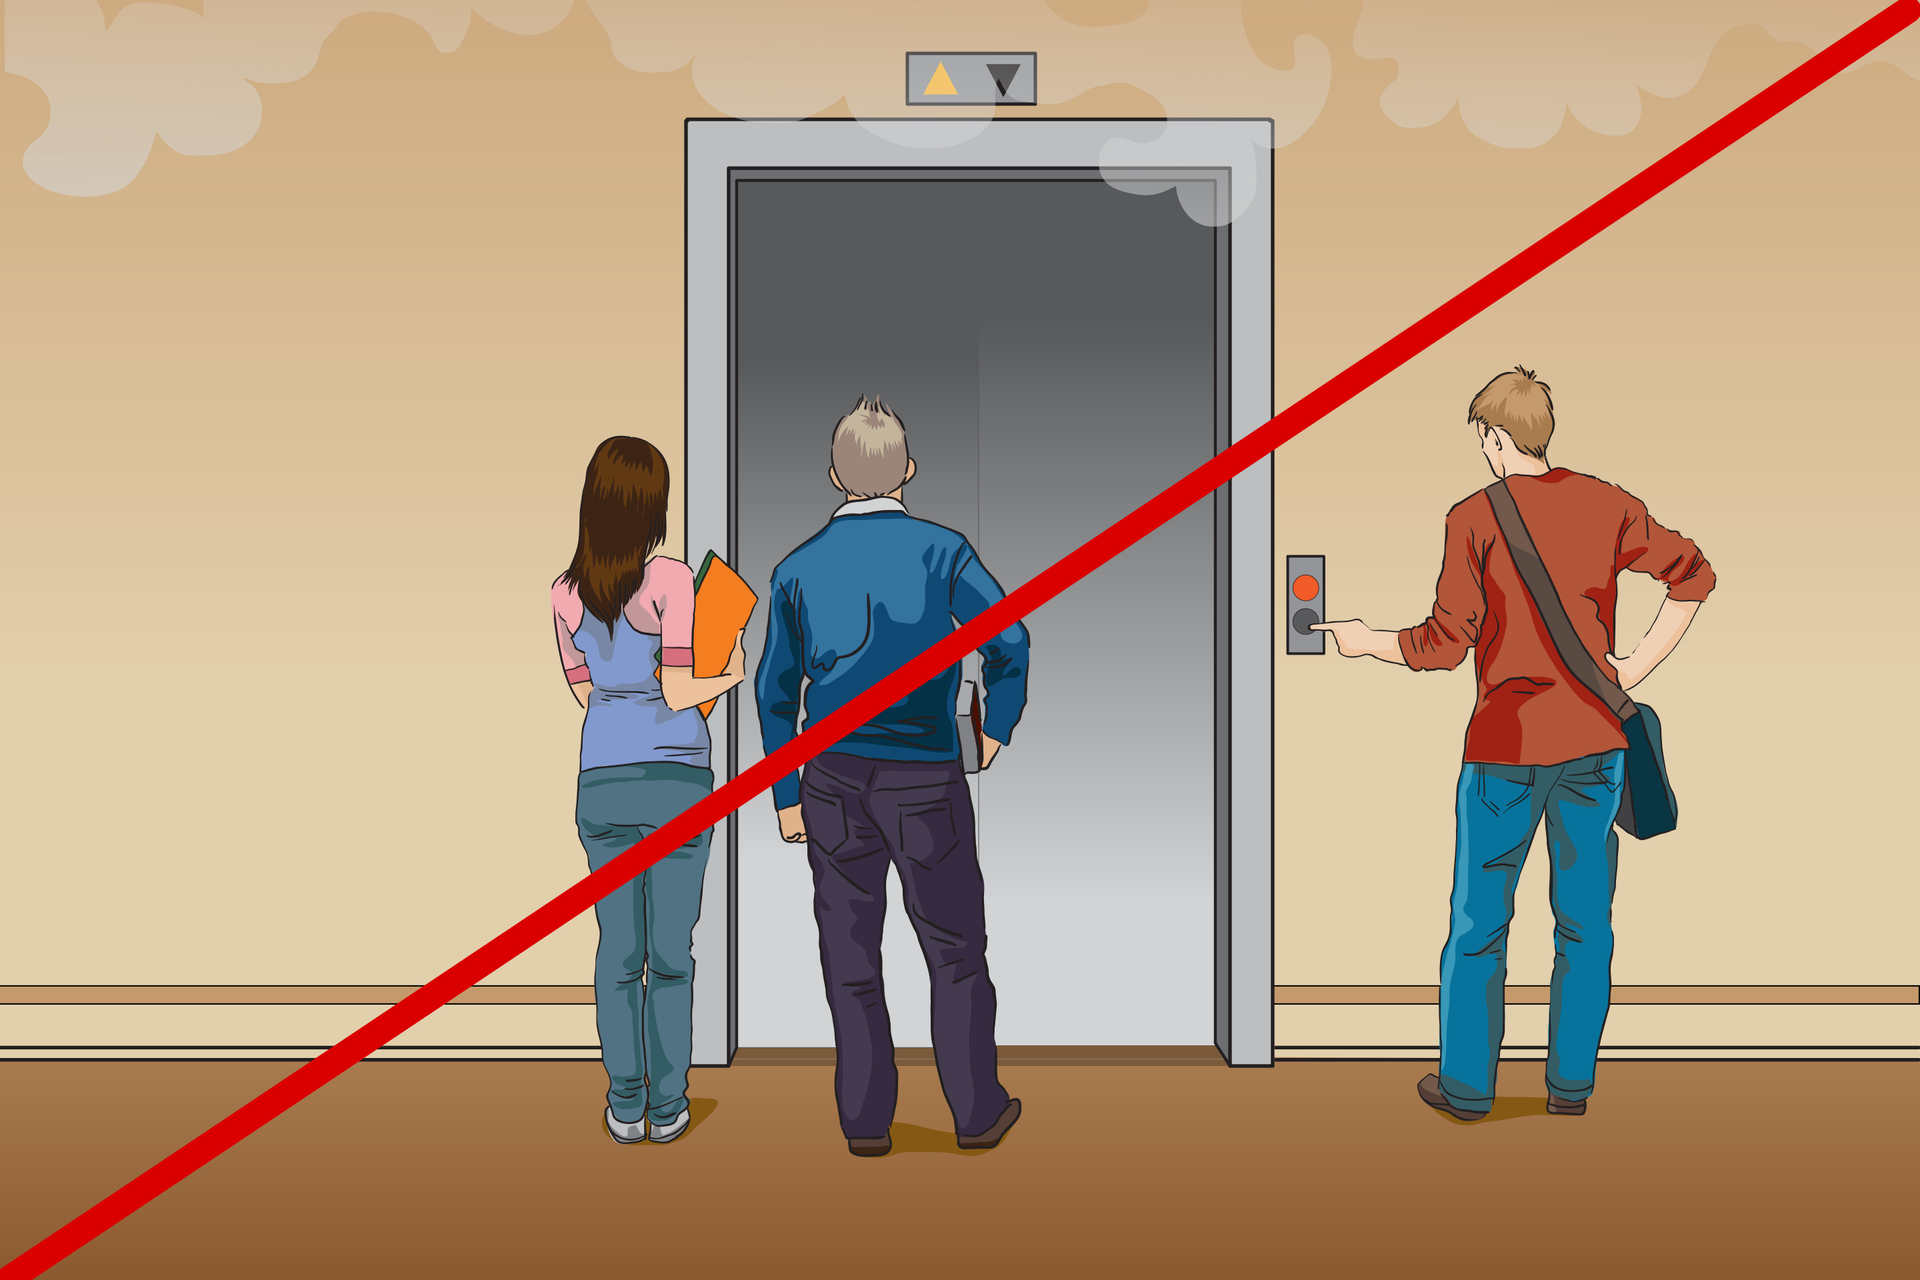 Ilustracja przedstawia sytuację, w której uczniowie stoją przed drzwiami windy chcąc z niej skorzystać. Widoczny jest też dym unoszący się pod sufitem. Rysunek jest przekreślony czerwoną kreską na znak, że w tej sytuacji jest to postępowanie niedopuszczalne. W trakcie ewakuacji nie należy korzystać z wind.